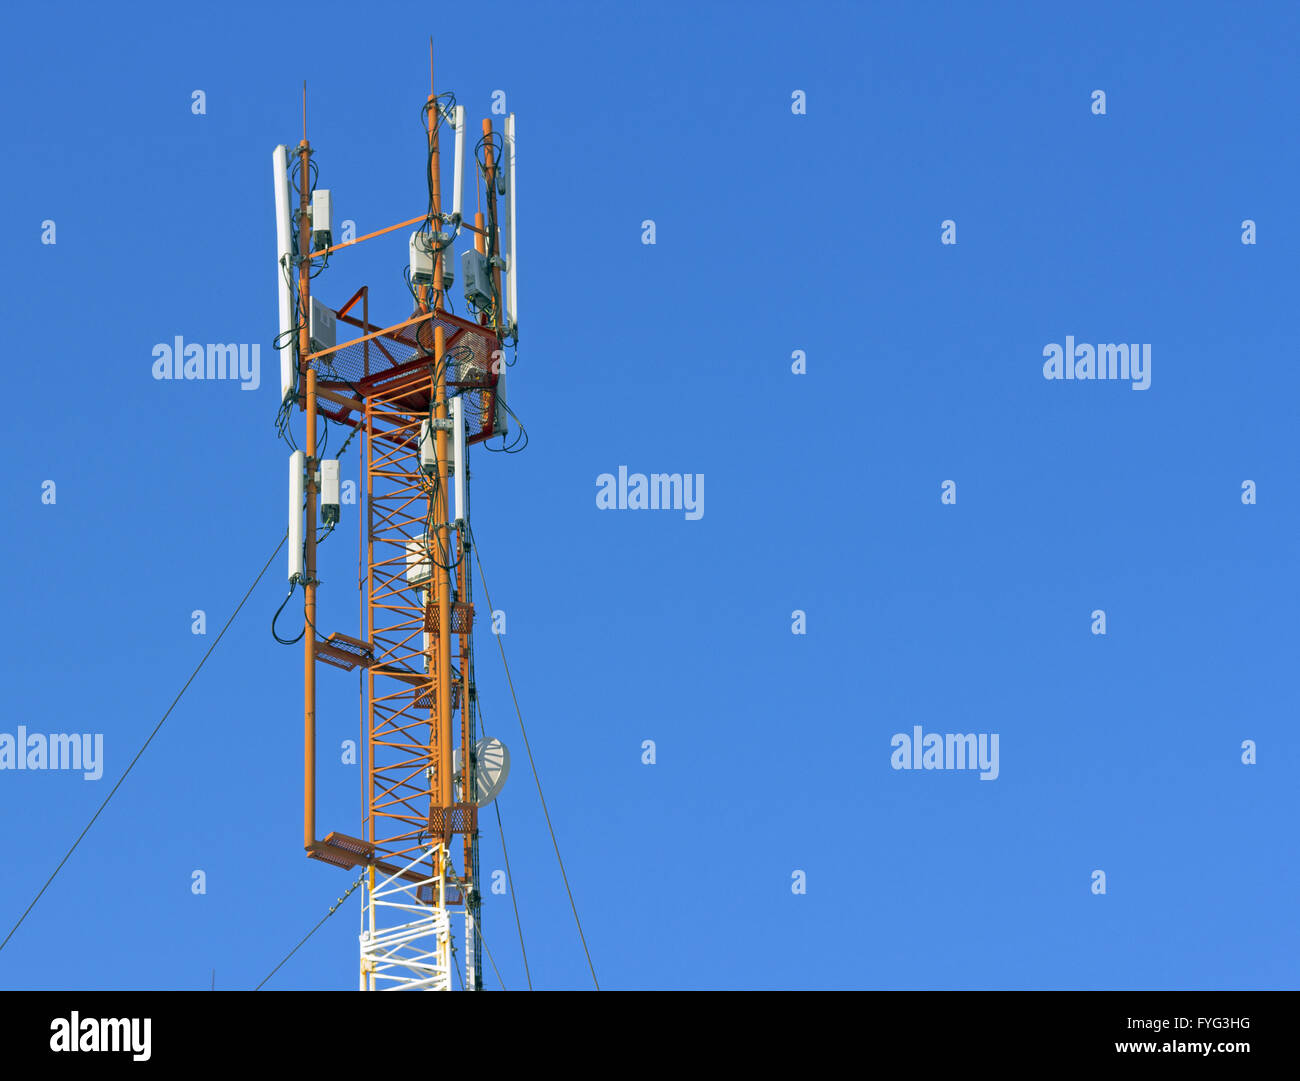 La tour de télévision et de communication pour des signaux de téléphone mobile Banque D'Images